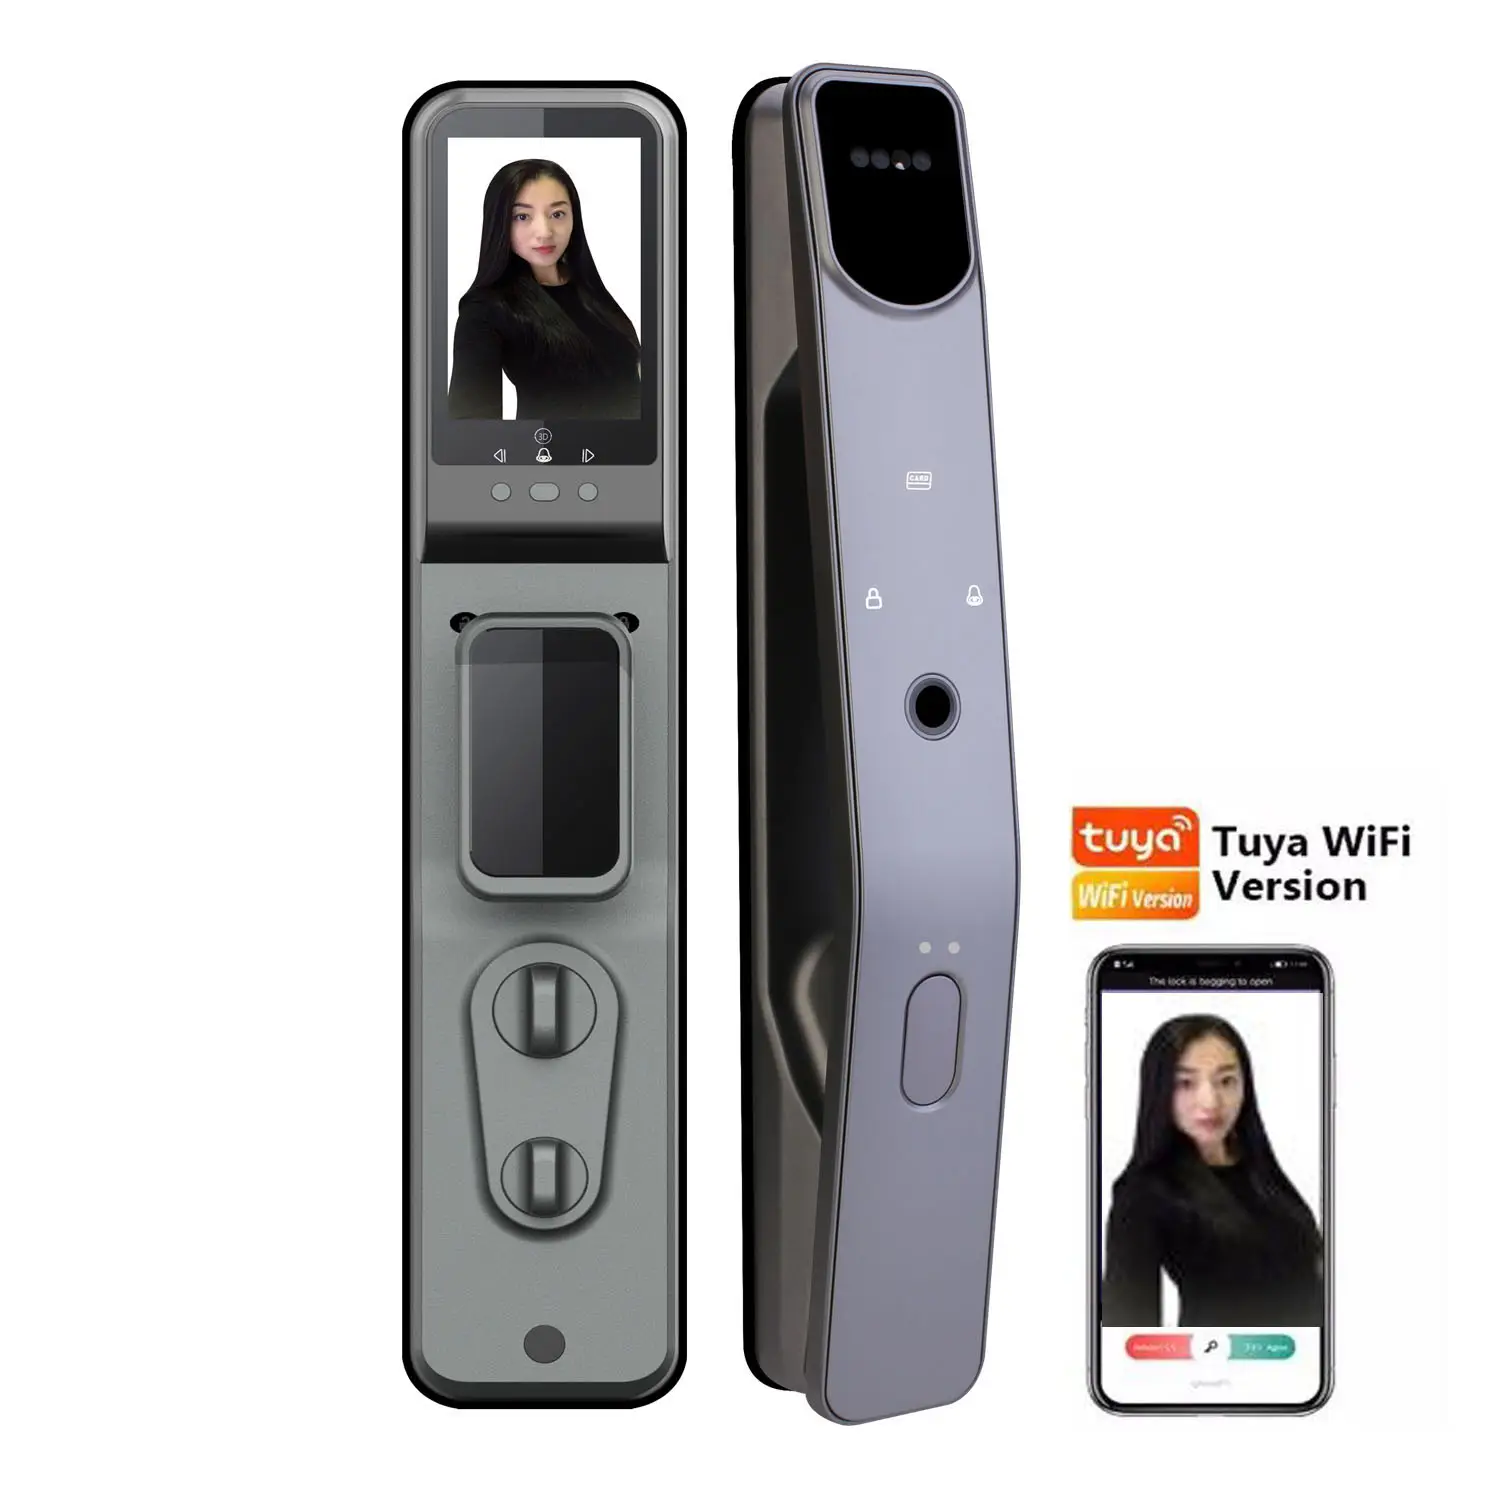 Riconoscimento facciale smart door lock con fotocamera, acquisizione immagini wifi Tuya App telecomando, impronte digitali, viso, password, carta